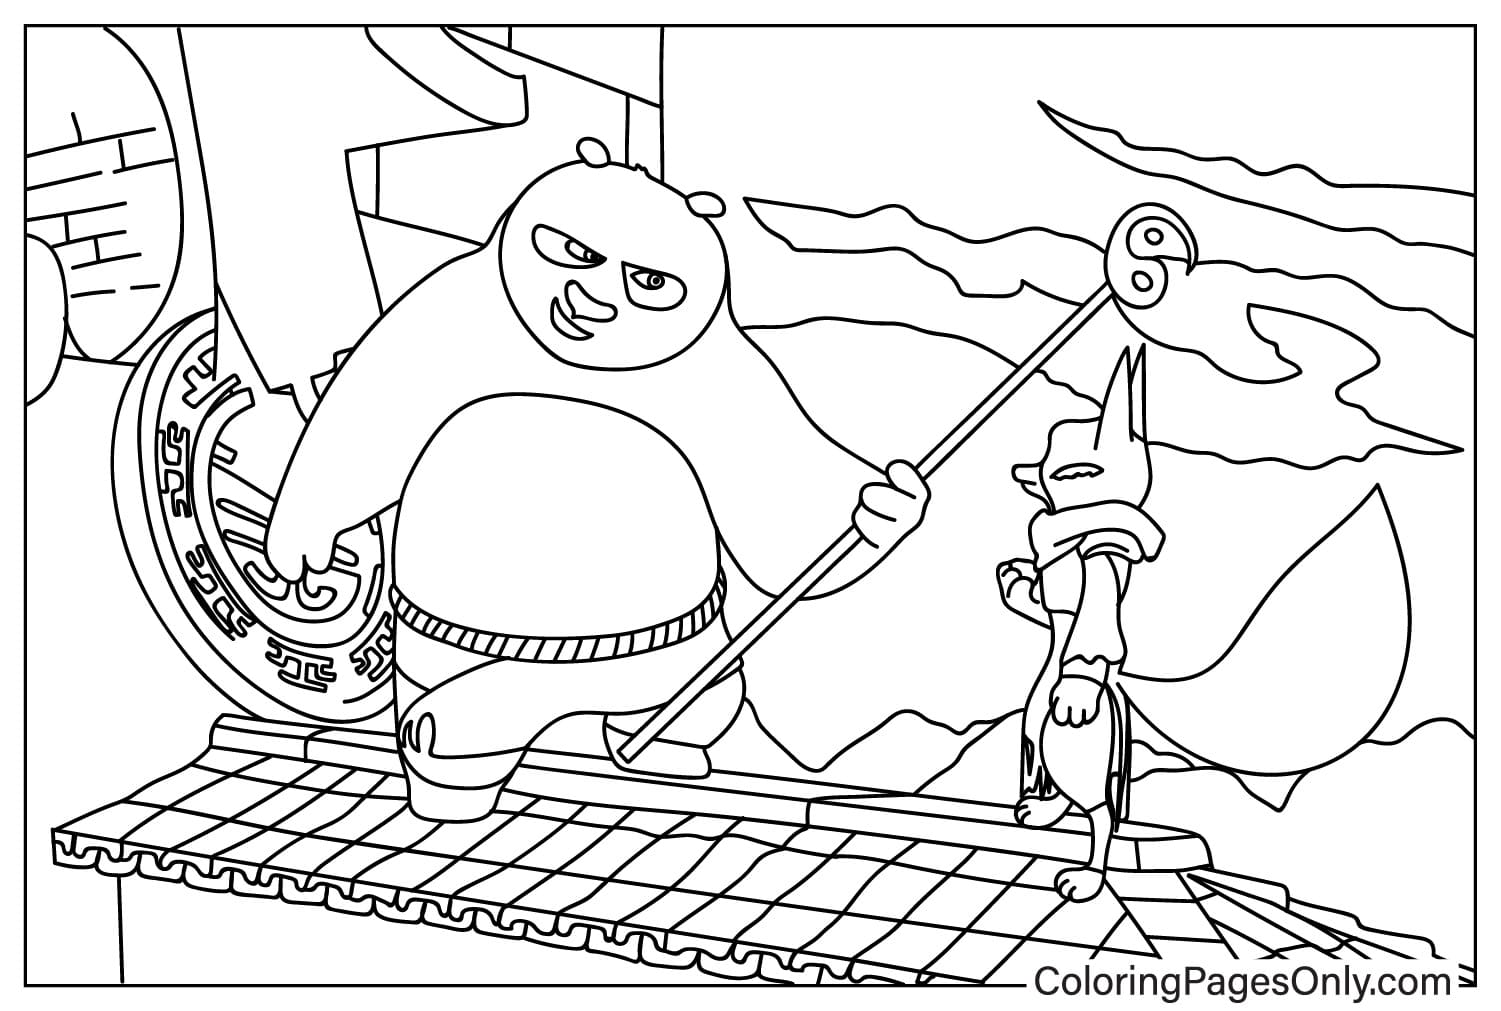 Раскраска По и Чжэнь из мультфильма «Кунг-фу Панда»